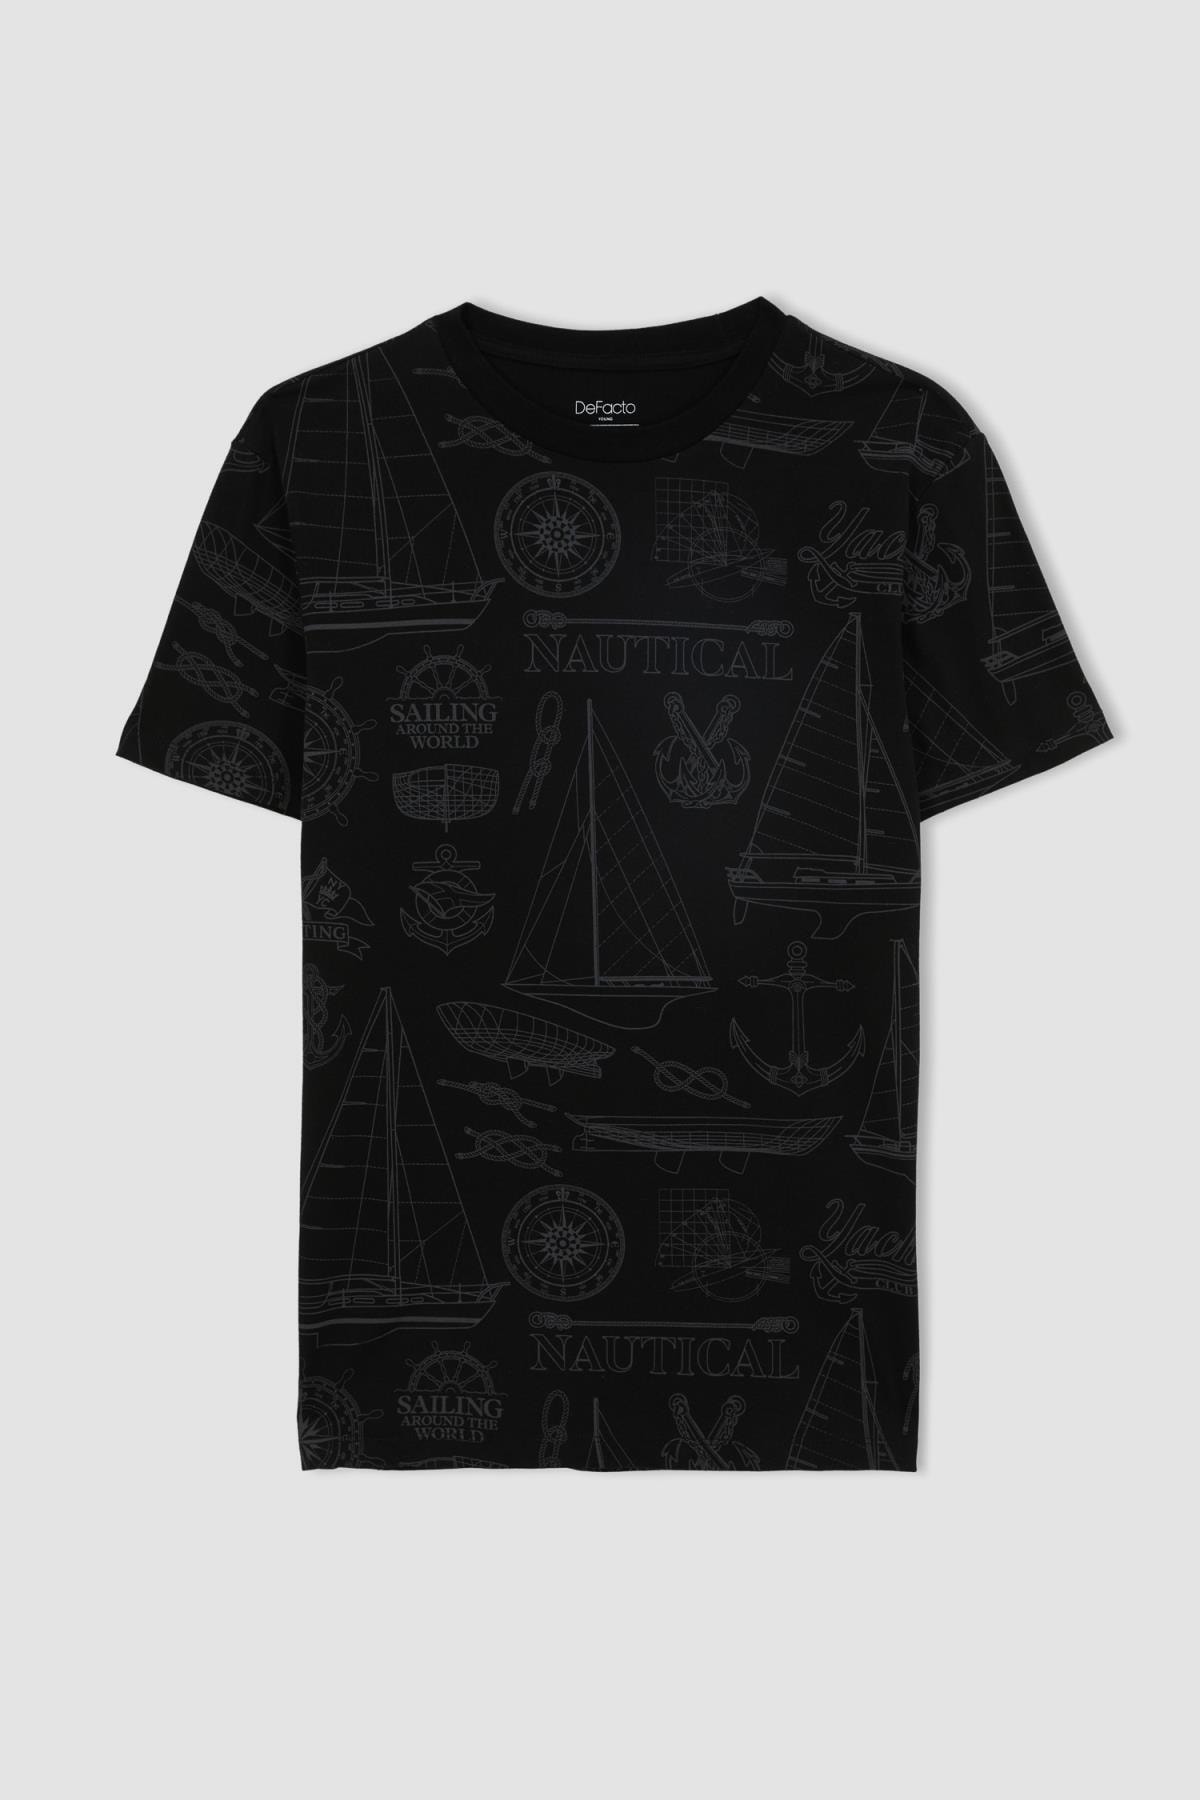 DeFacto T-Shirt Schwarz Regular Fit Fast ausverkauft